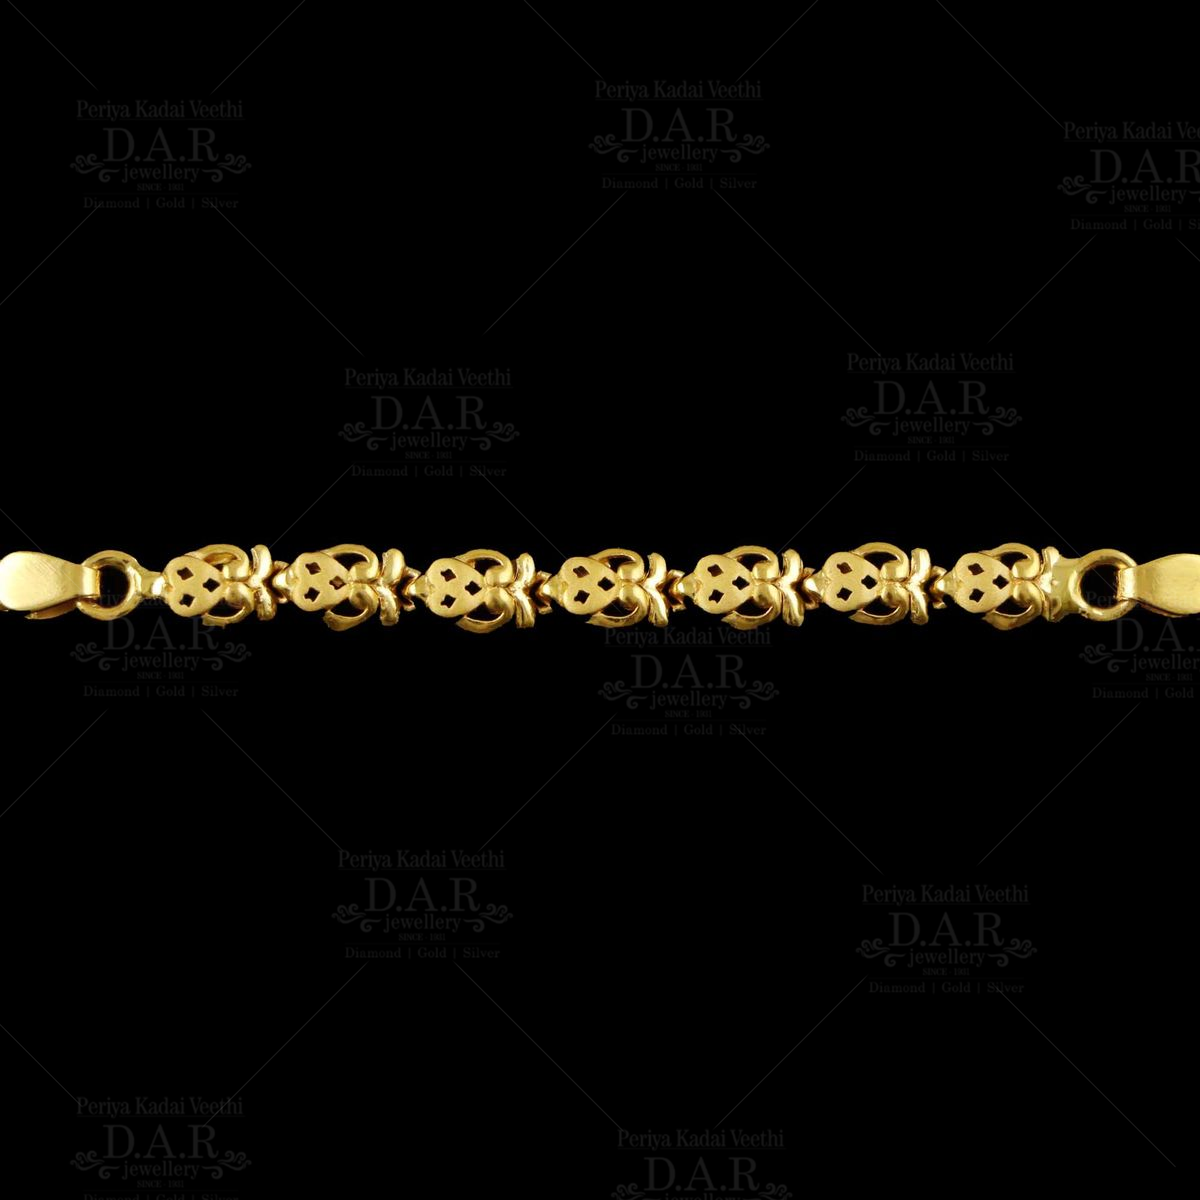 8 Design Bracelet Making | How to make a gold bracelet - YouTube